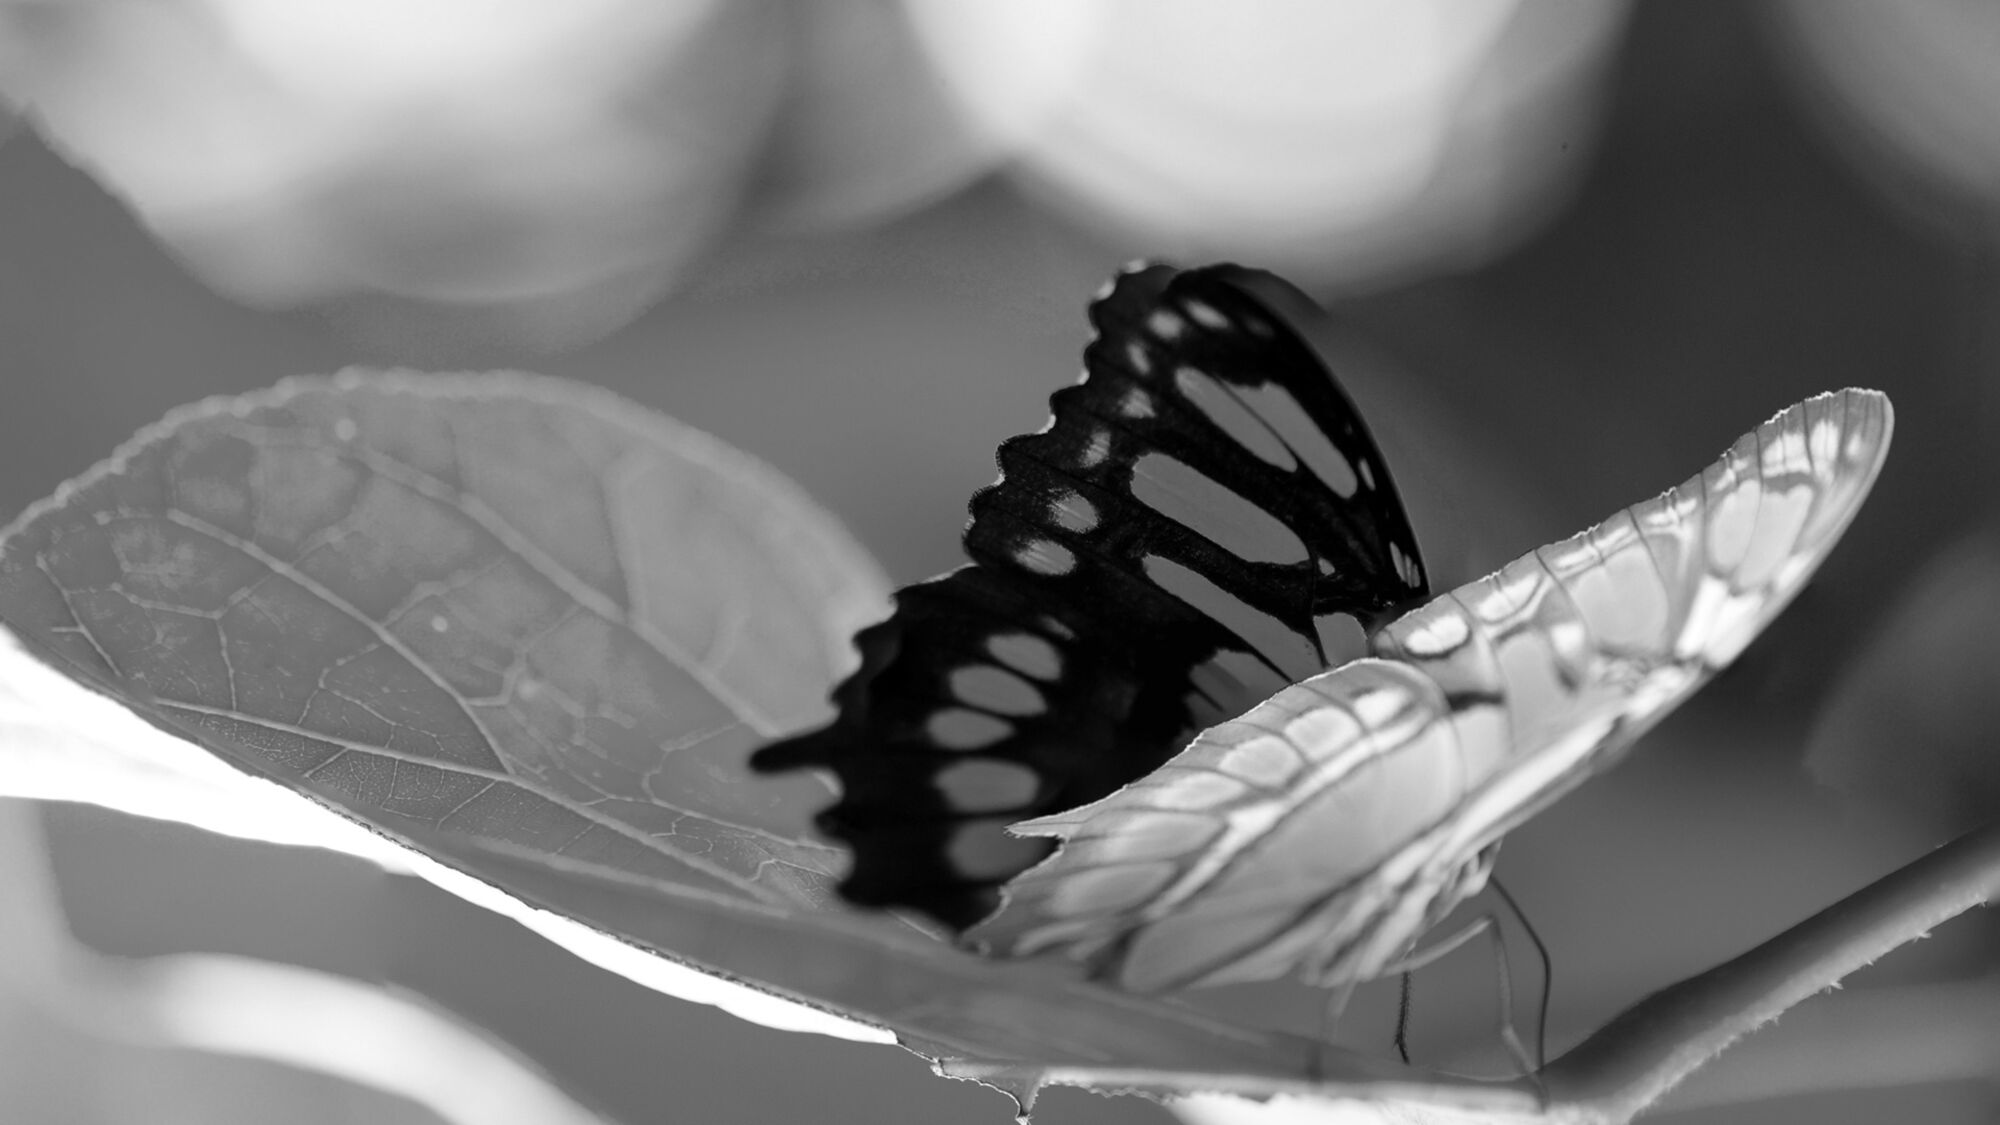 vlinder_zww.jpg